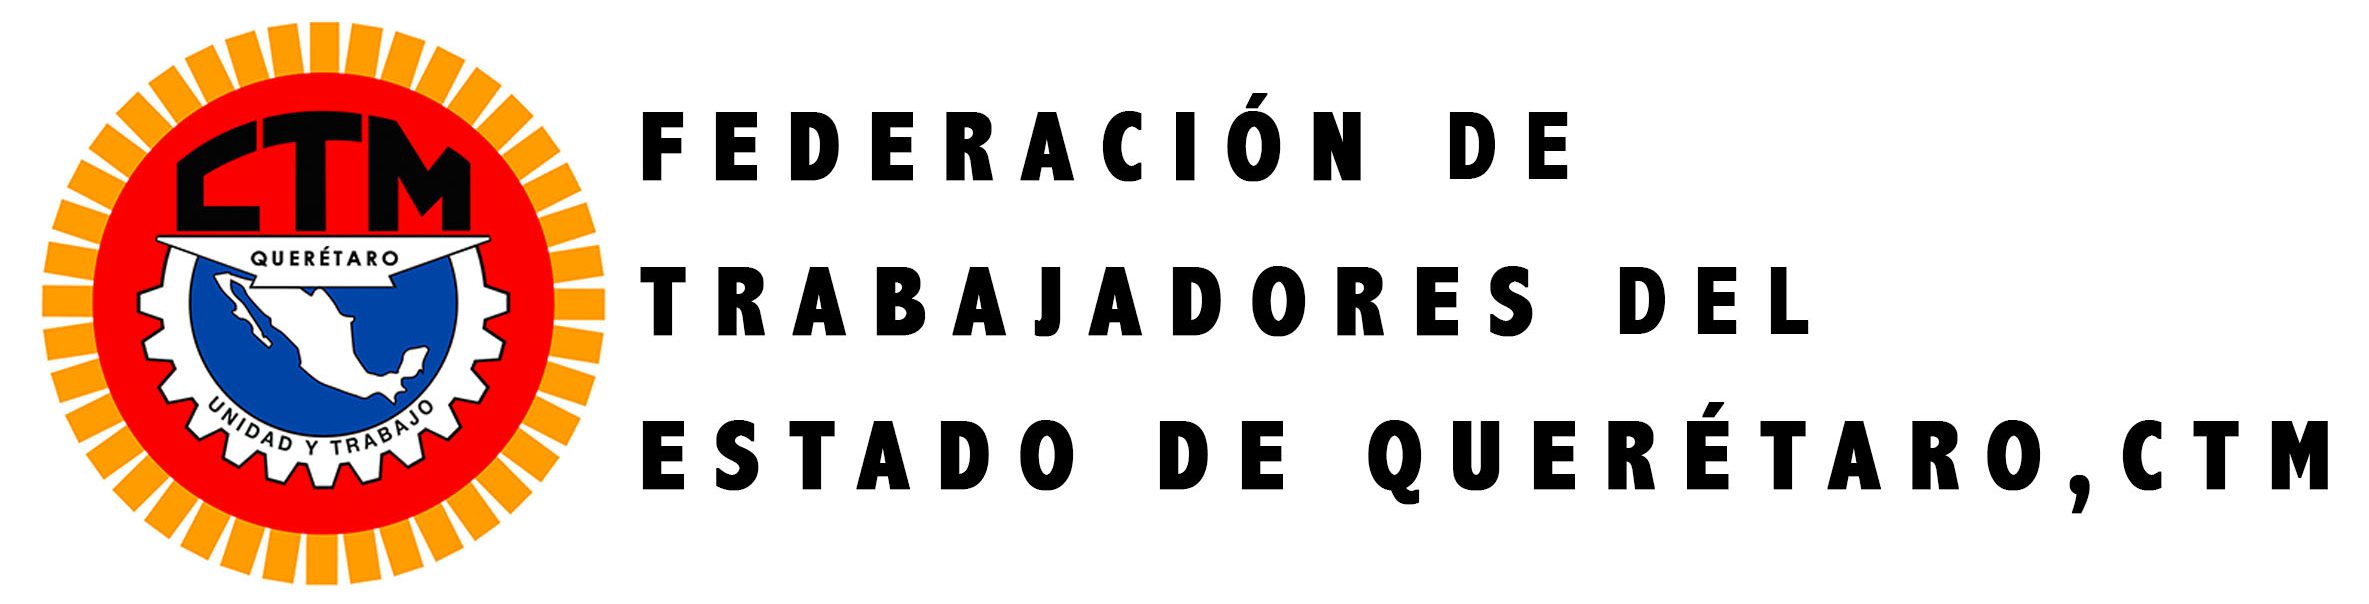 Federación de Trabajadores del Estado de Querétaro